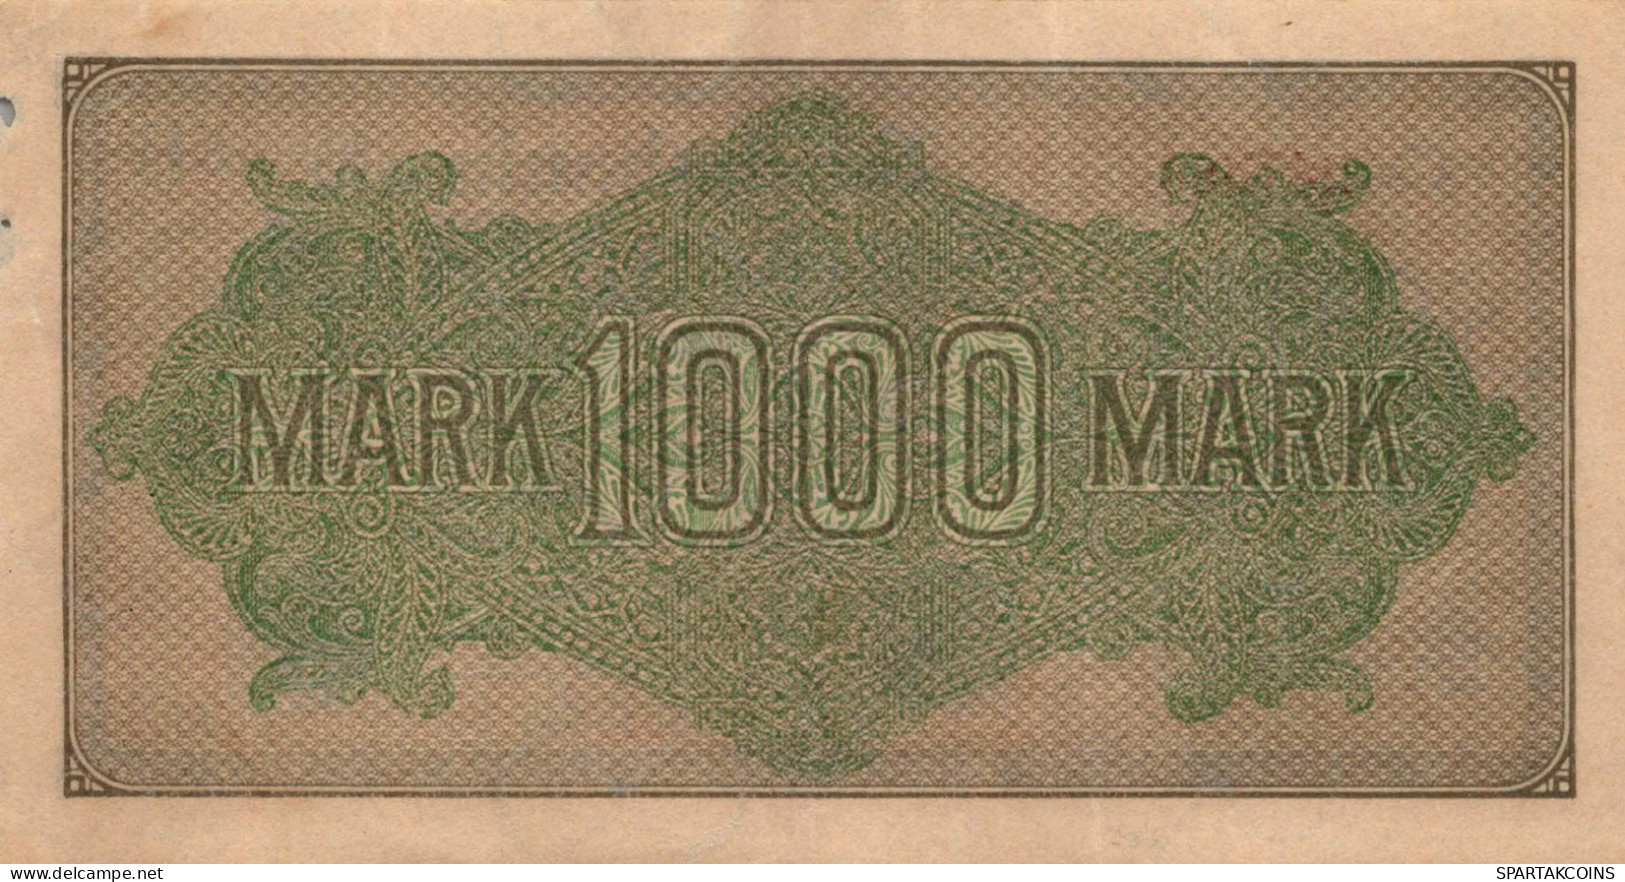 1000 MARK 1922 Stadt BERLIN DEUTSCHLAND Papiergeld Banknote #PL453 - [11] Local Banknote Issues